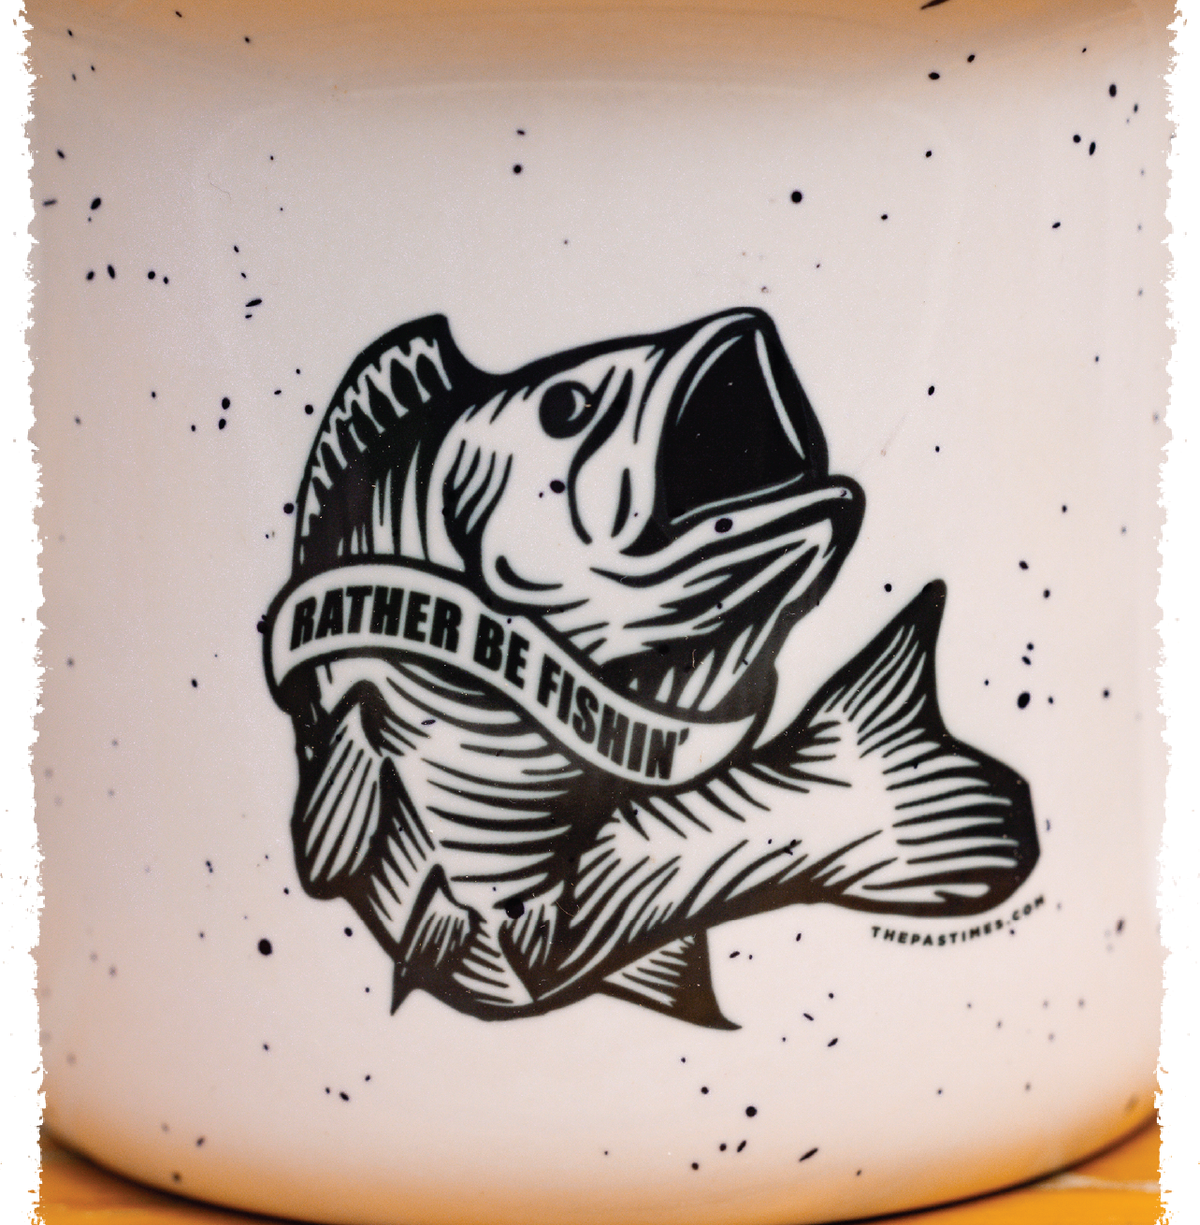 Rather Be Fishin' Mug